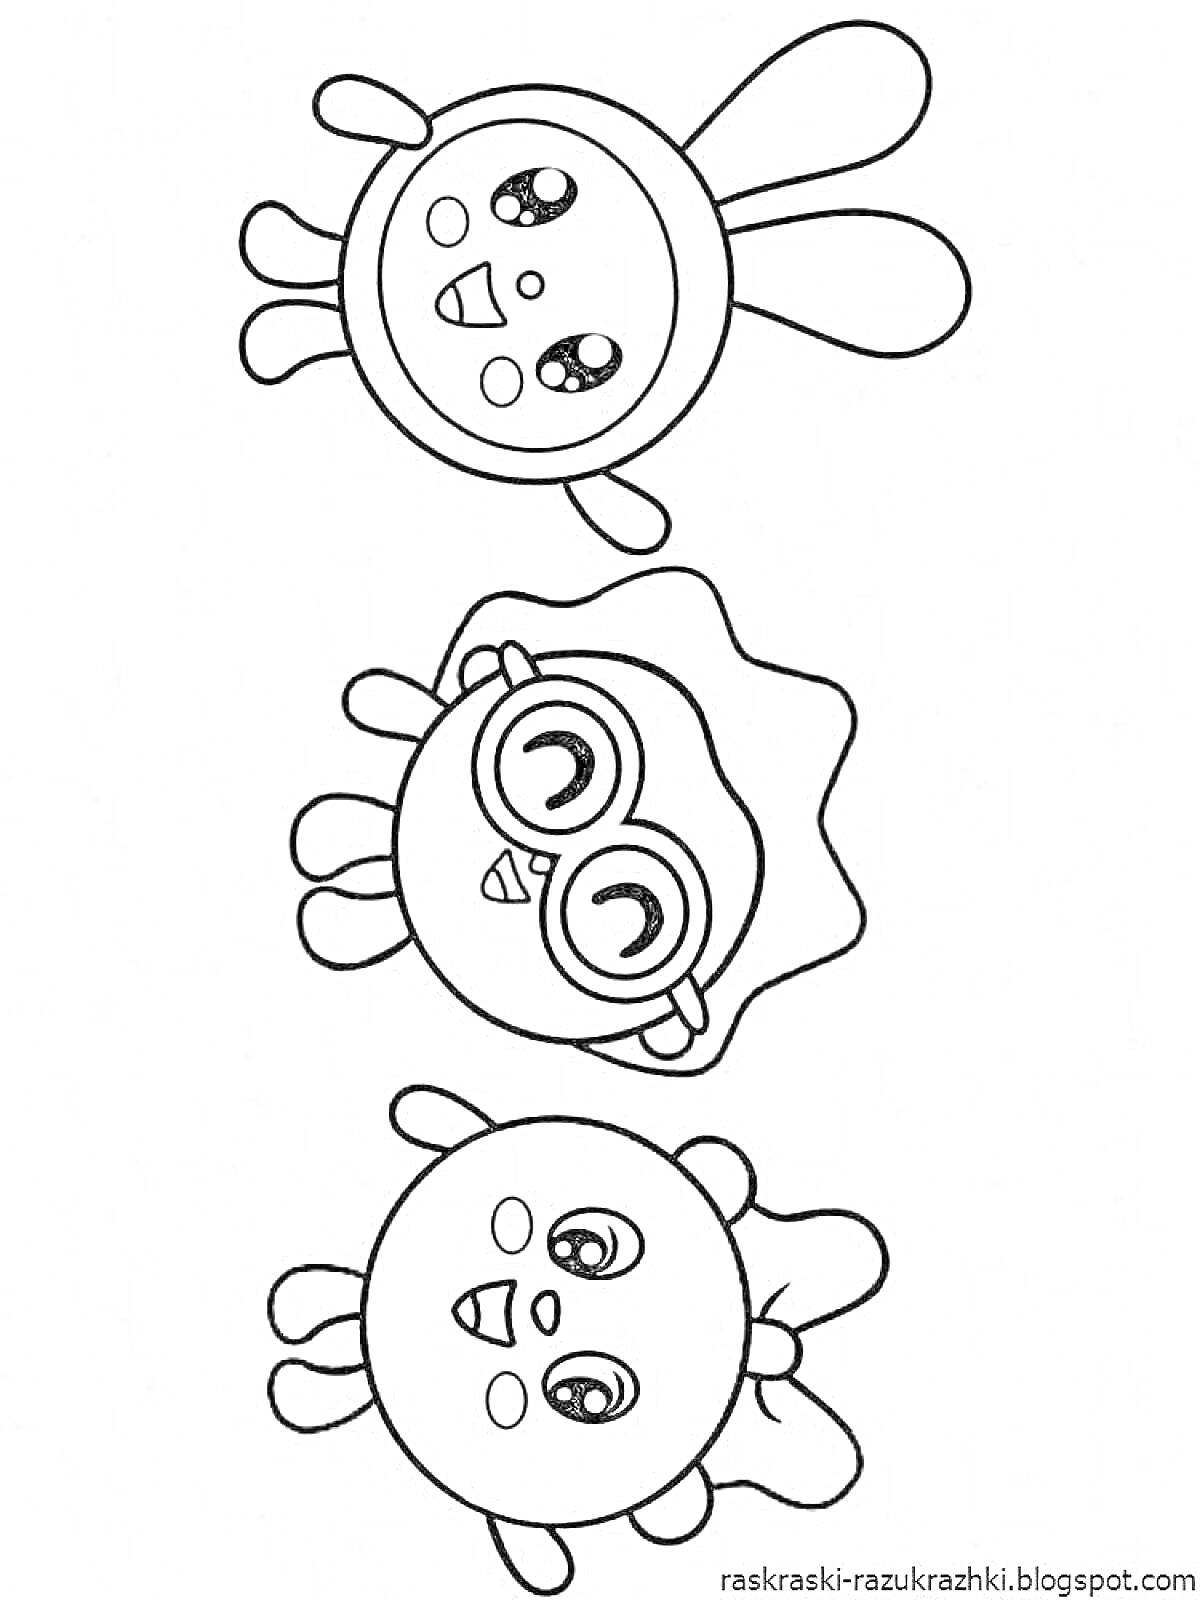 Раскраска Малышарики - кролик с большими ушами, круглый персонаж с очками, круглый персонаж с бантиком